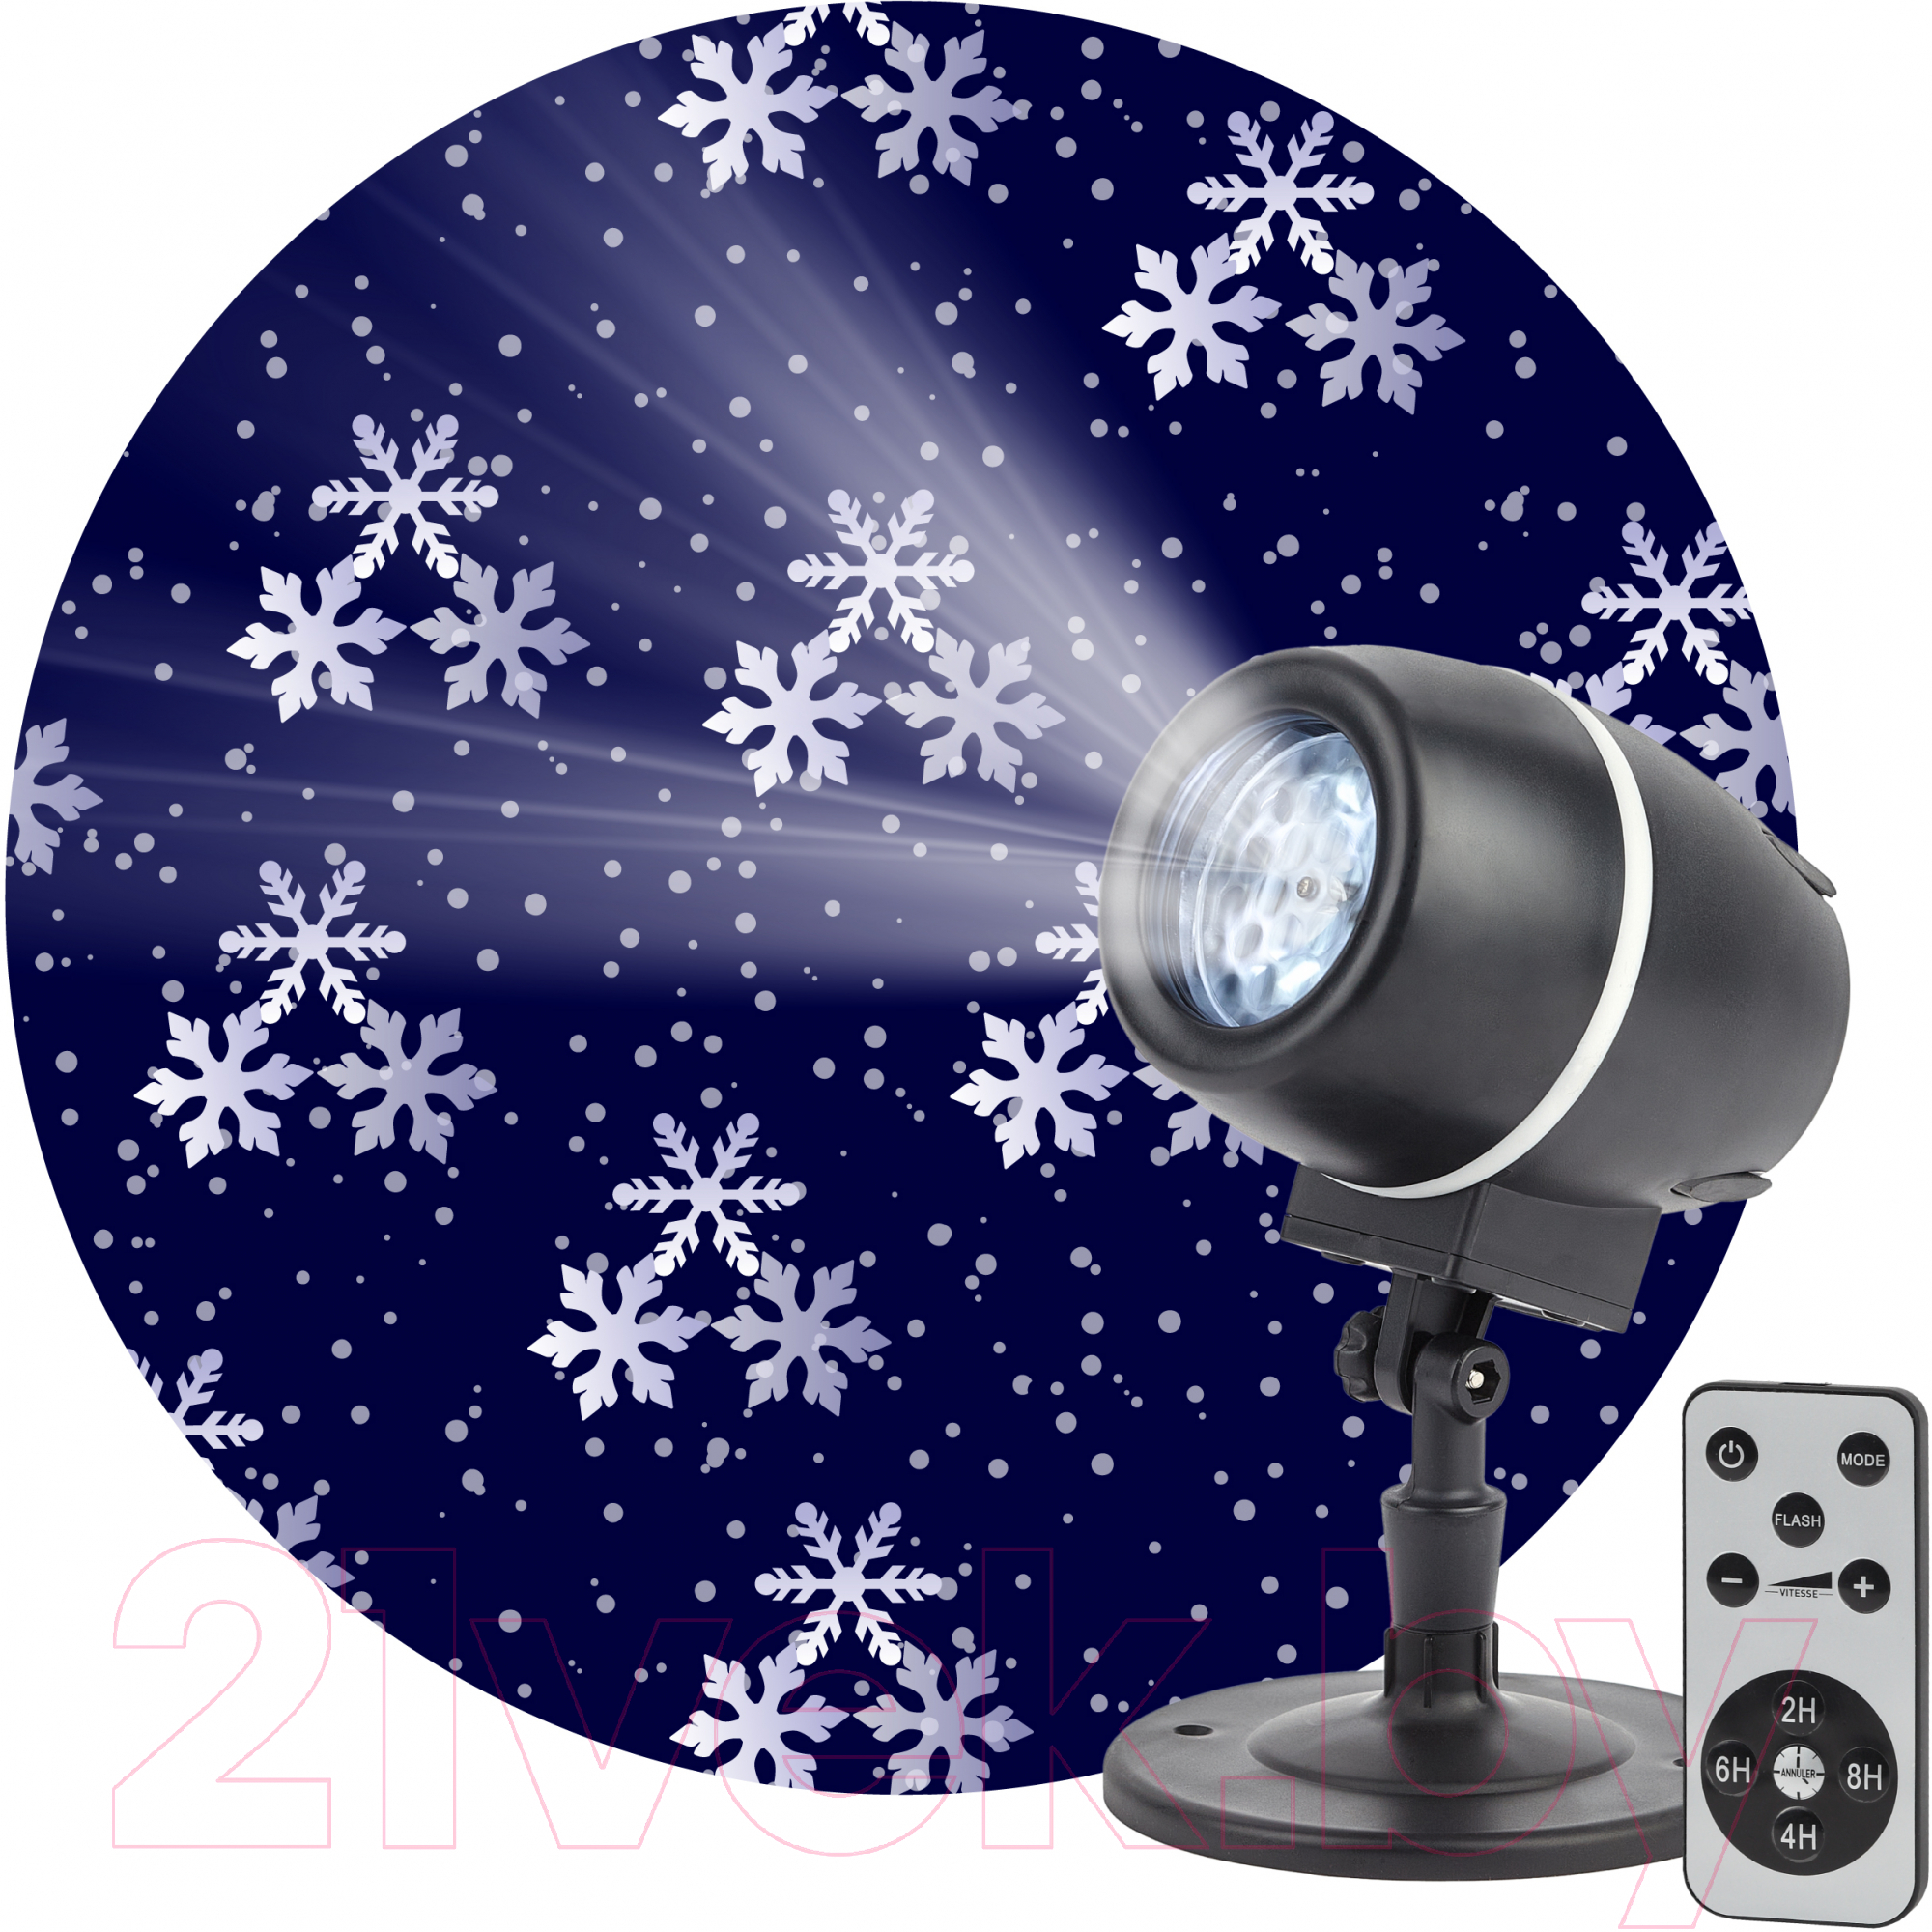 Прожектор сценический ЭРА Снежный вальс ENIOP-08 / Б0047979